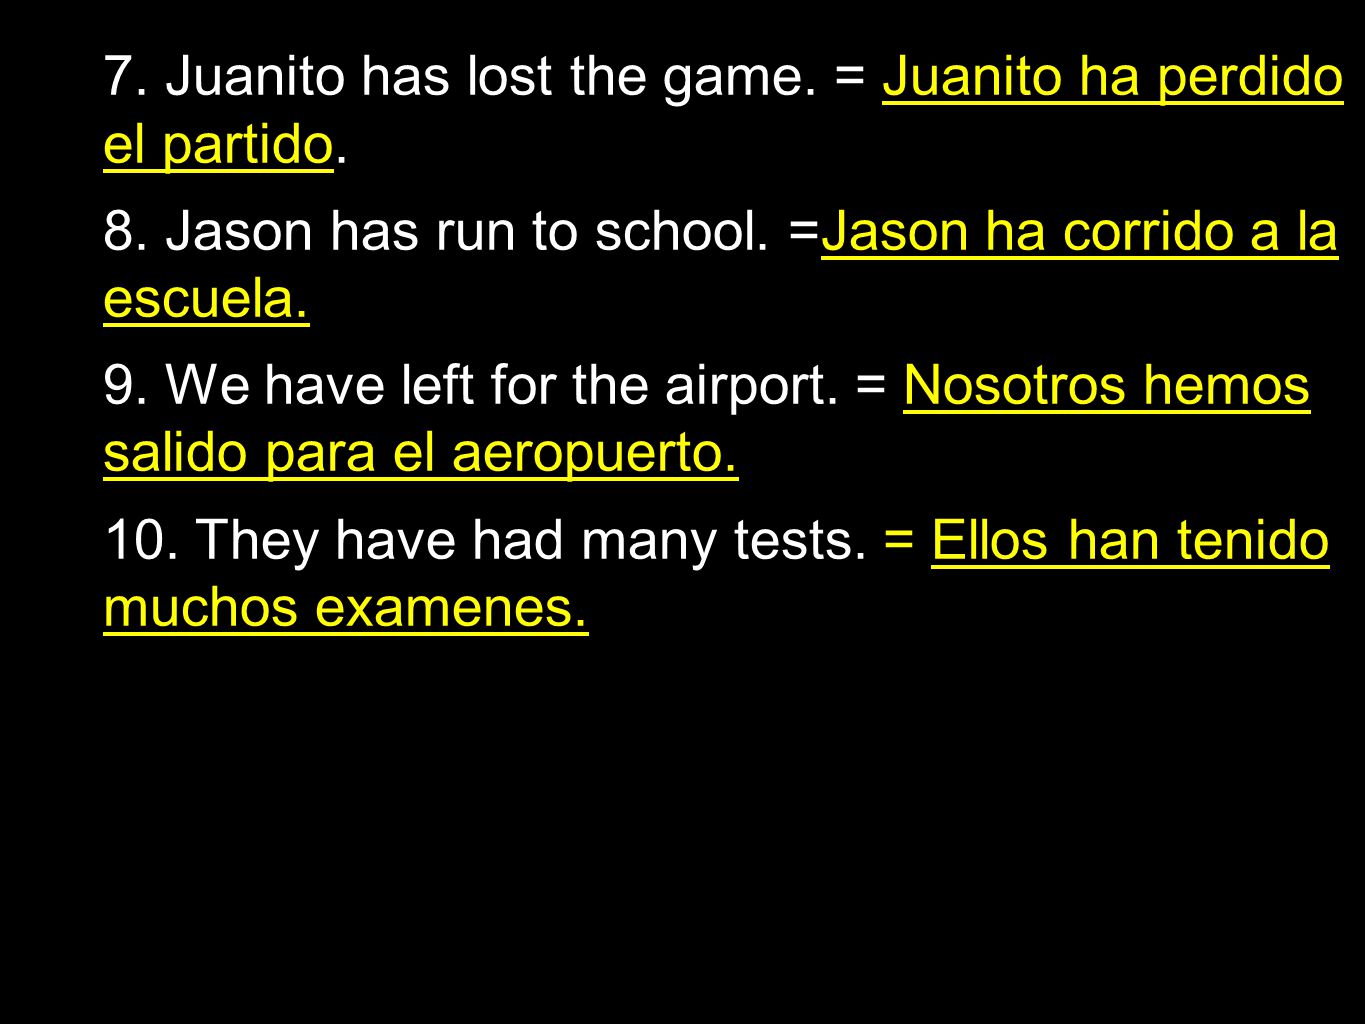 7. Juanito has lost the game. = Juanito ha perdido el partido.